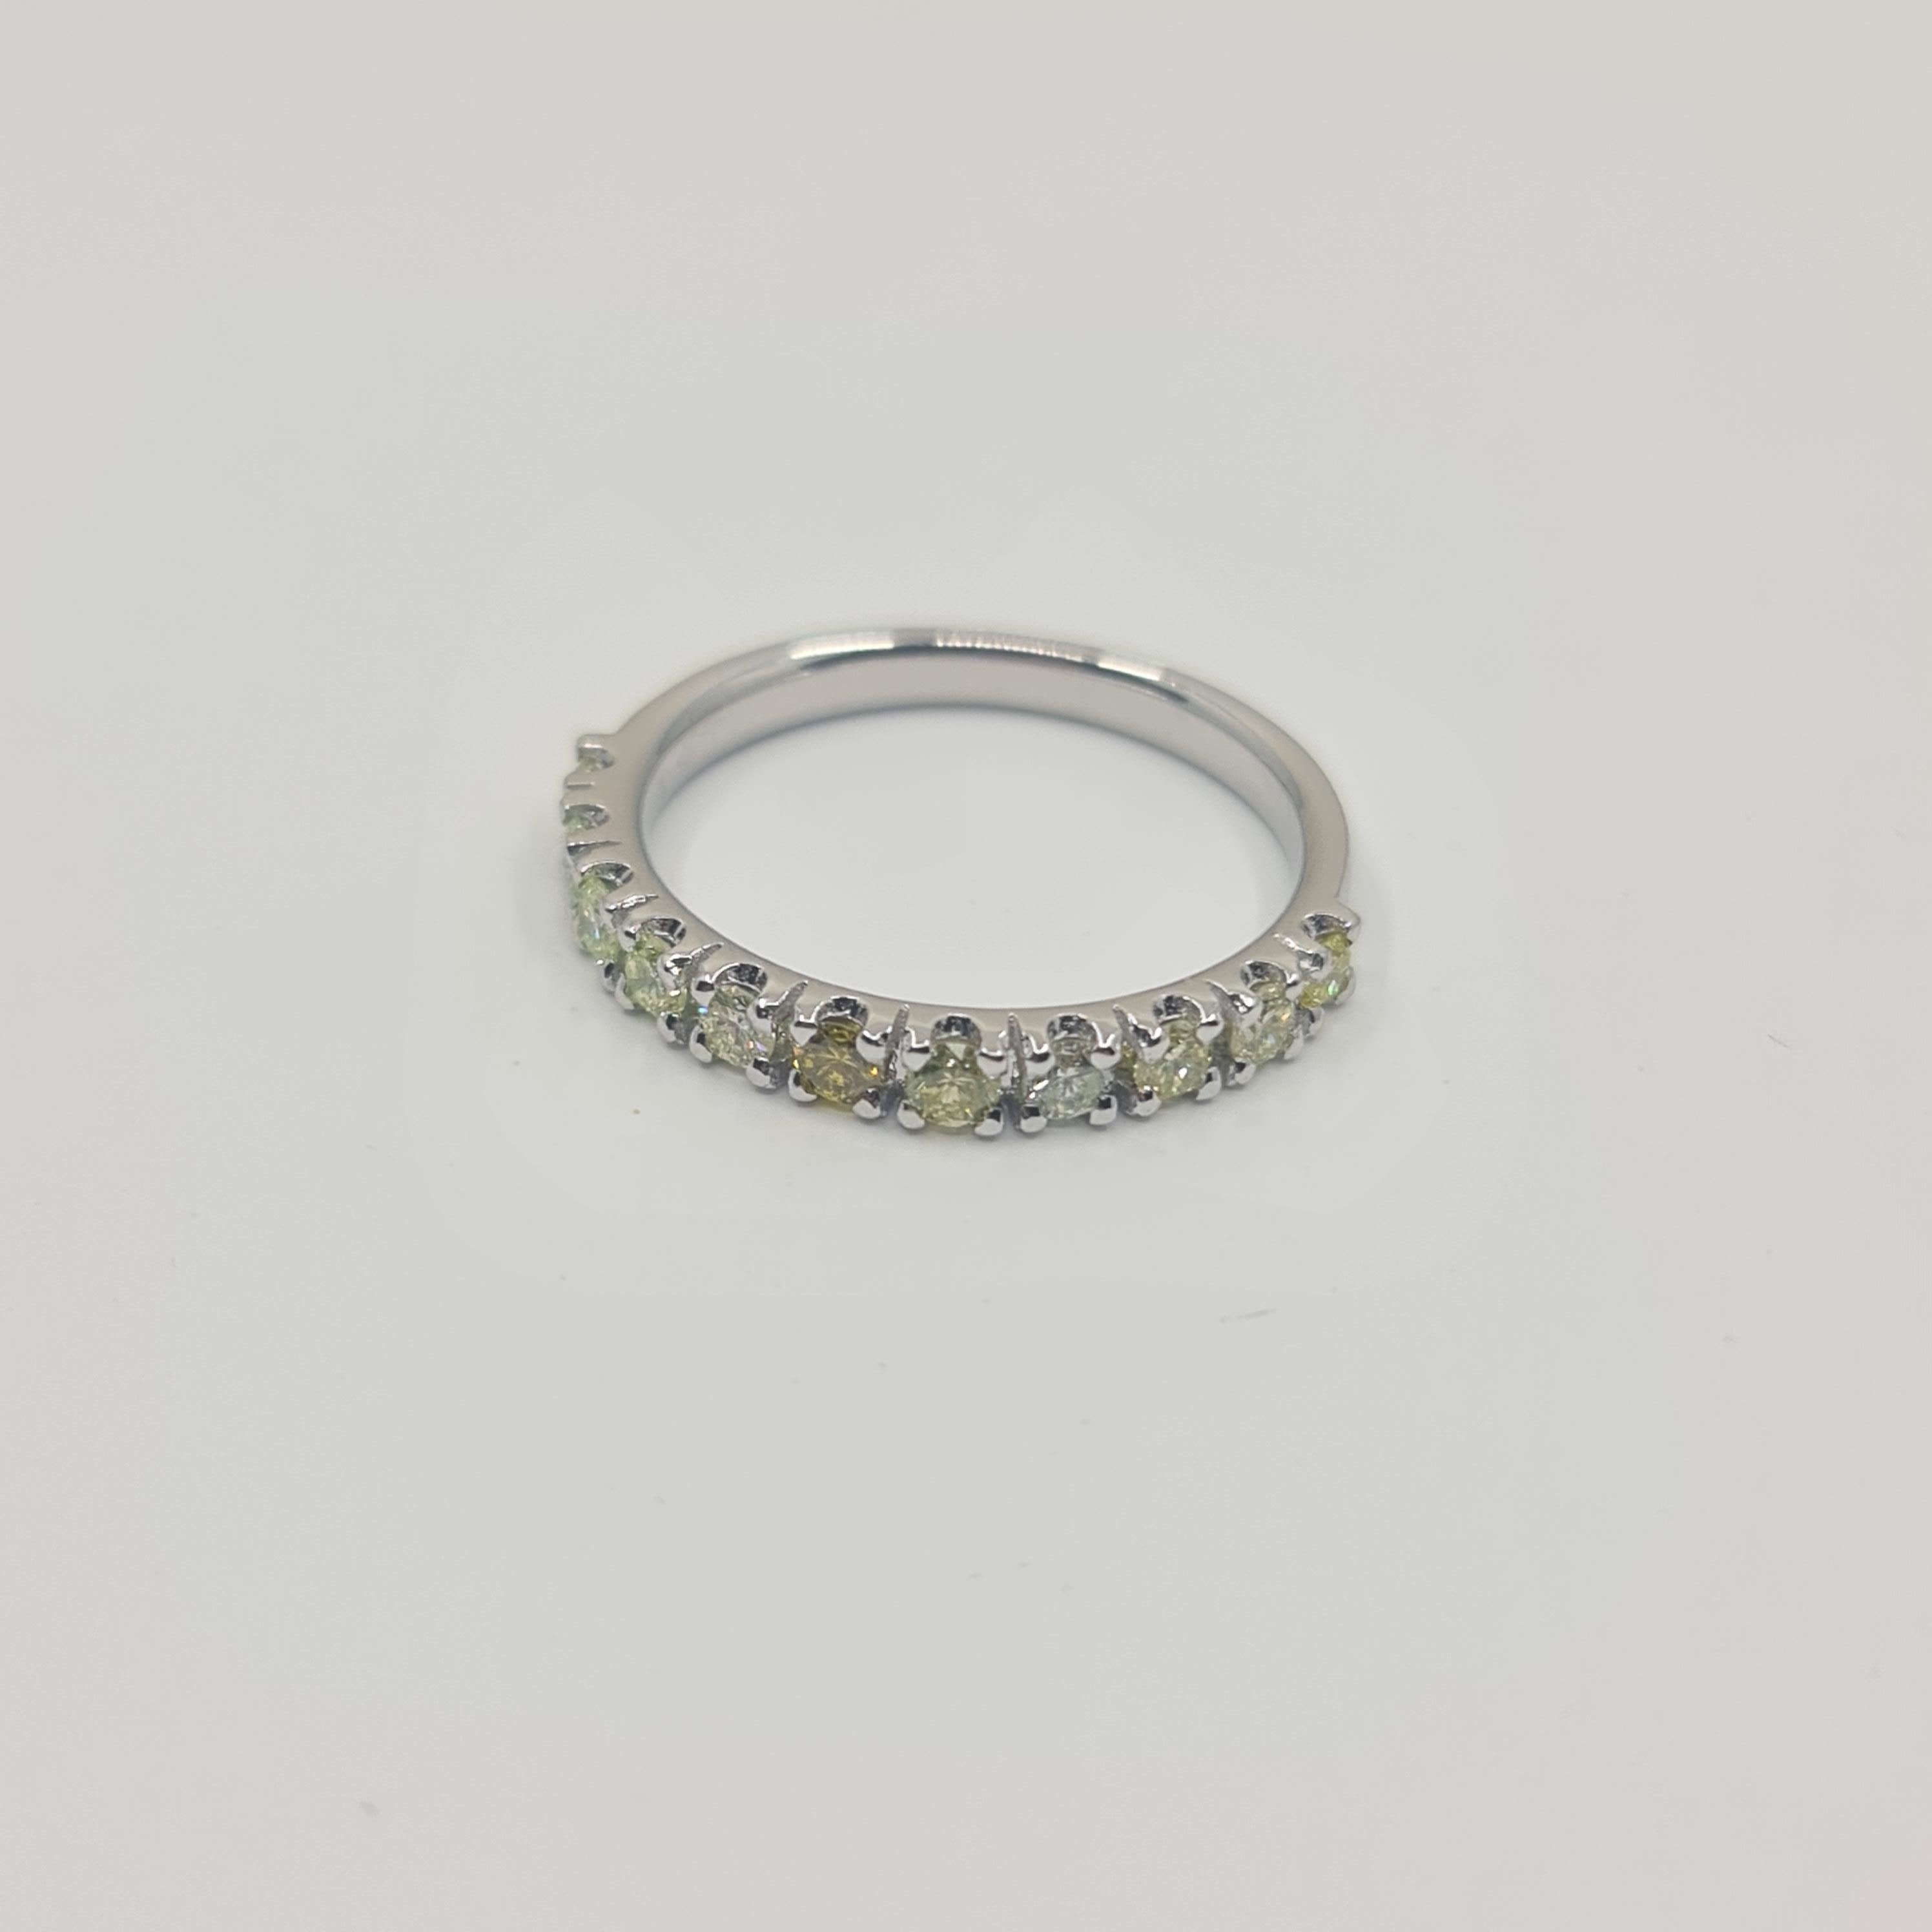 Exquisiter Alliance-Diamantring mit 0,57 Karat ausgefallenen grünen Brilliants 

Einzigartiger Ring aus 18k Weißgold mit grünen Diamanten im Brillantschliff. Hochglanzpoliert.   

4 C's:
Karat: 0,57
Farbe: Fancy Green - Fancy Vivid Green (behandelte